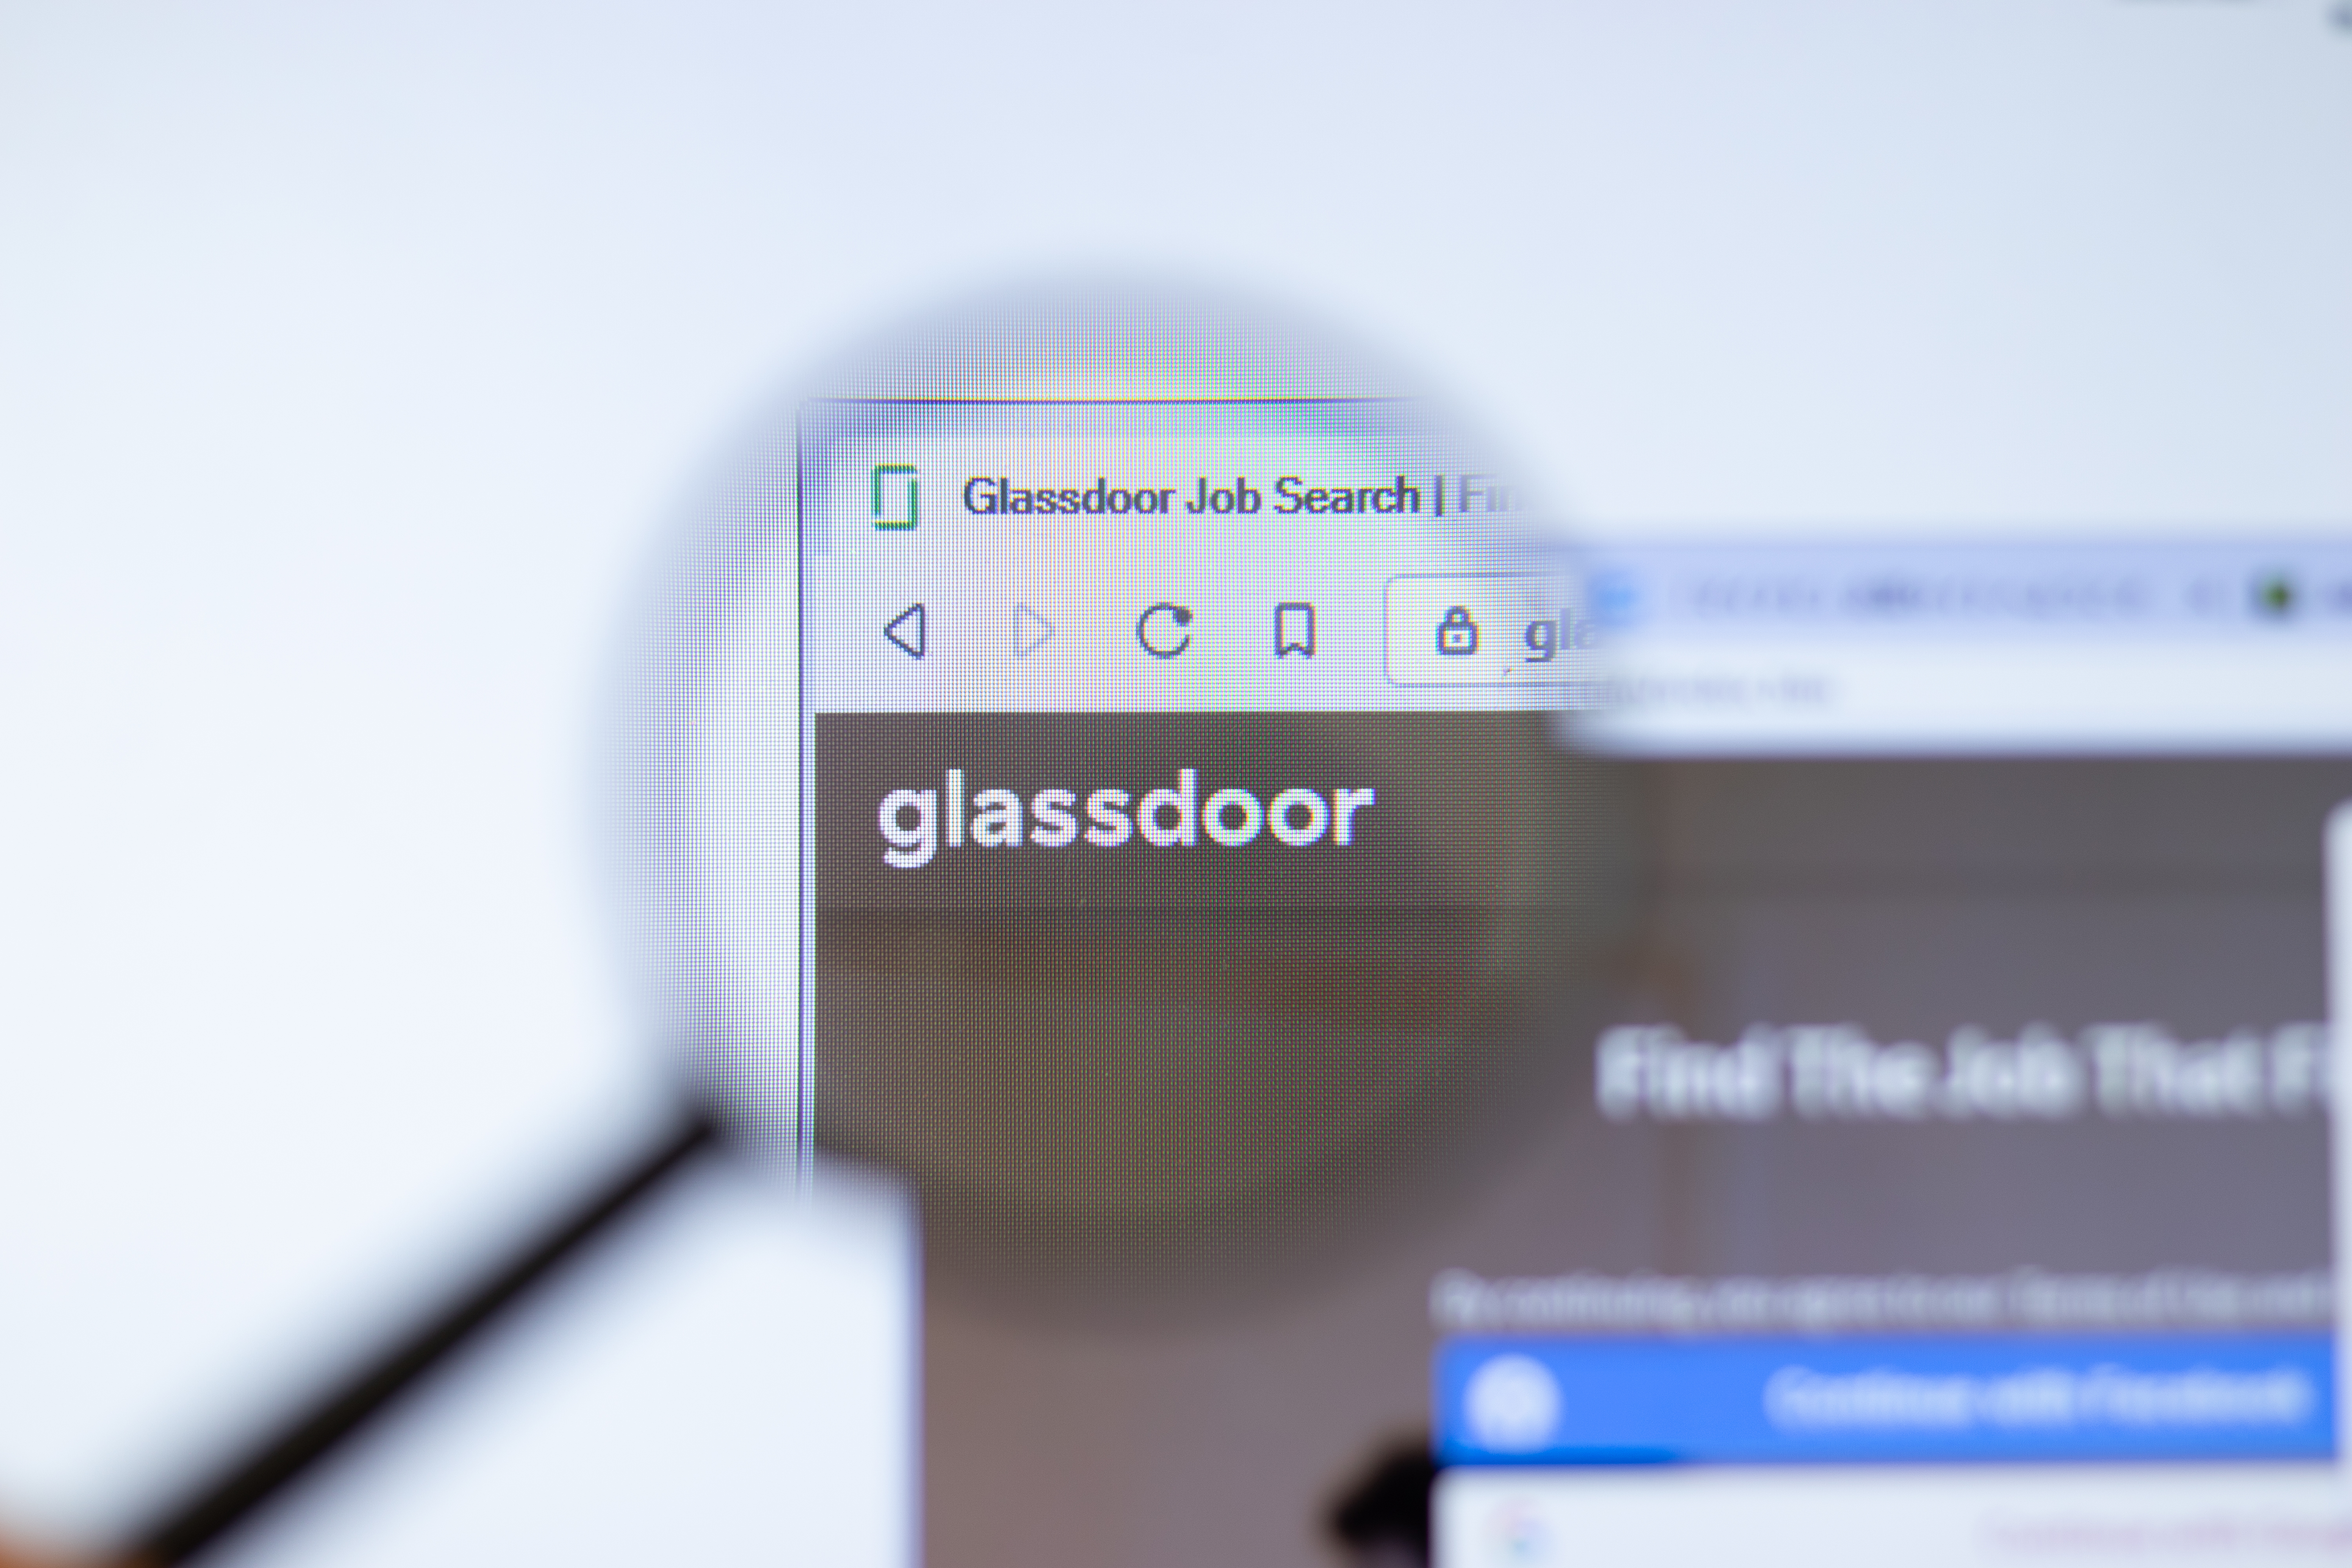 glassdoor reviews